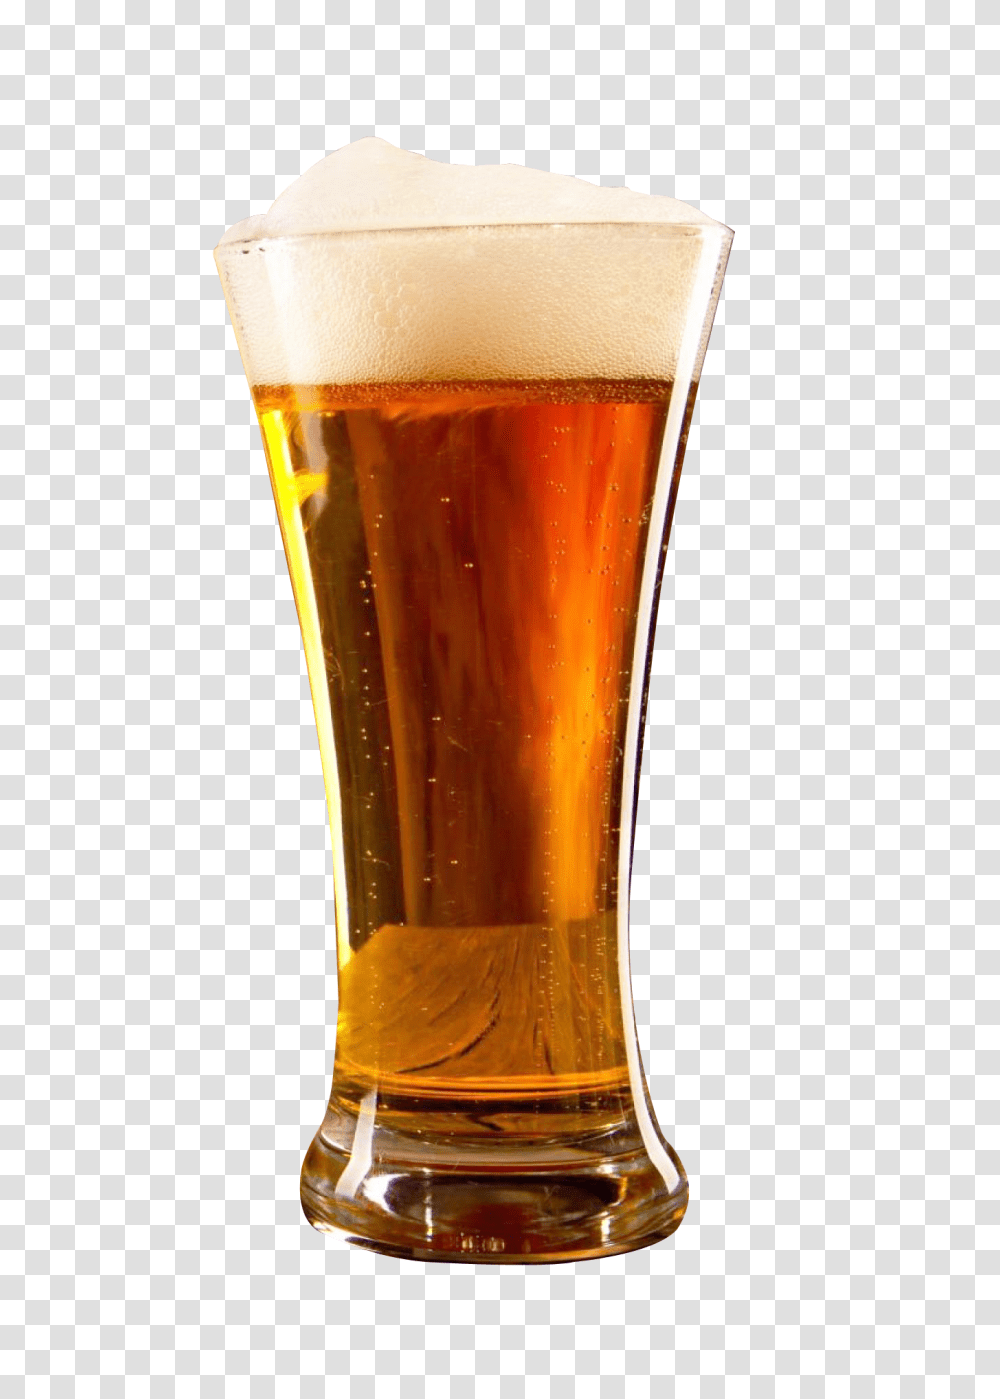 Beer Glass Image, Drink, Alcohol, Beverage, Lager Transparent Png